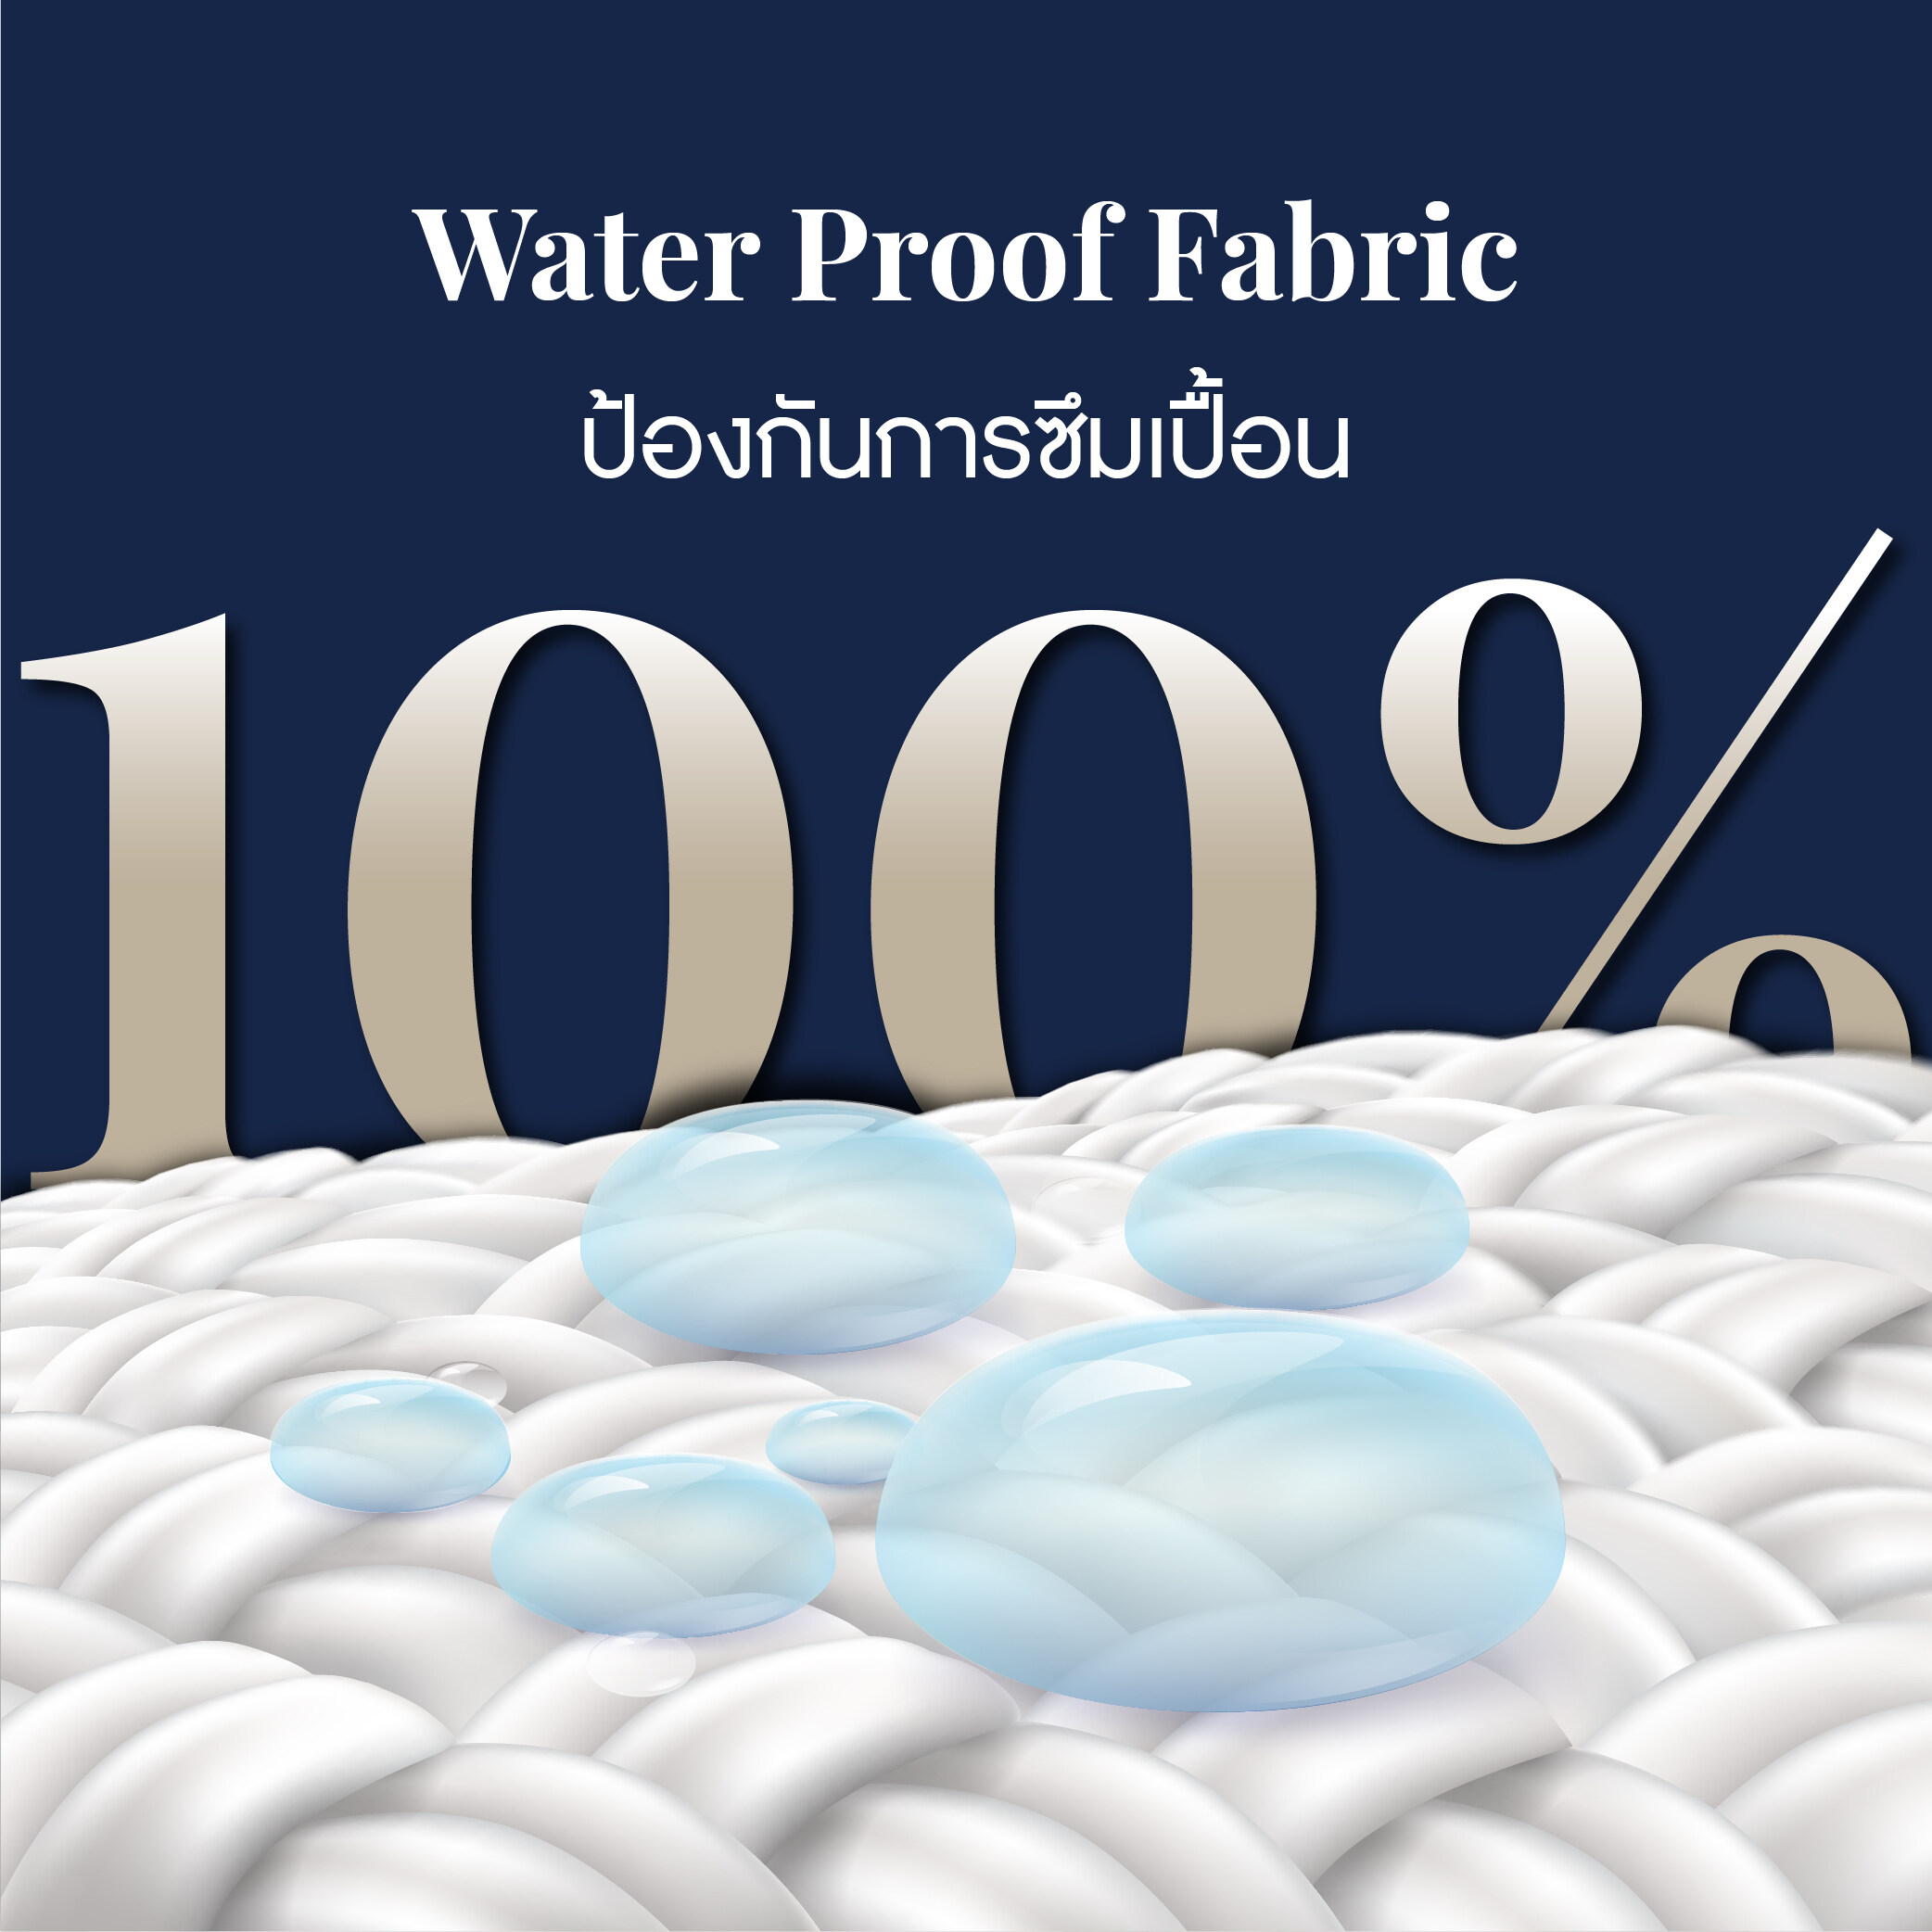 ผ้ารองกันเปื้อนกันน้ำ100%แบบรัดมุมสี่ด้าน สี Plain White สี Plain Whiteขนาดสินค้า 6 ฟุต